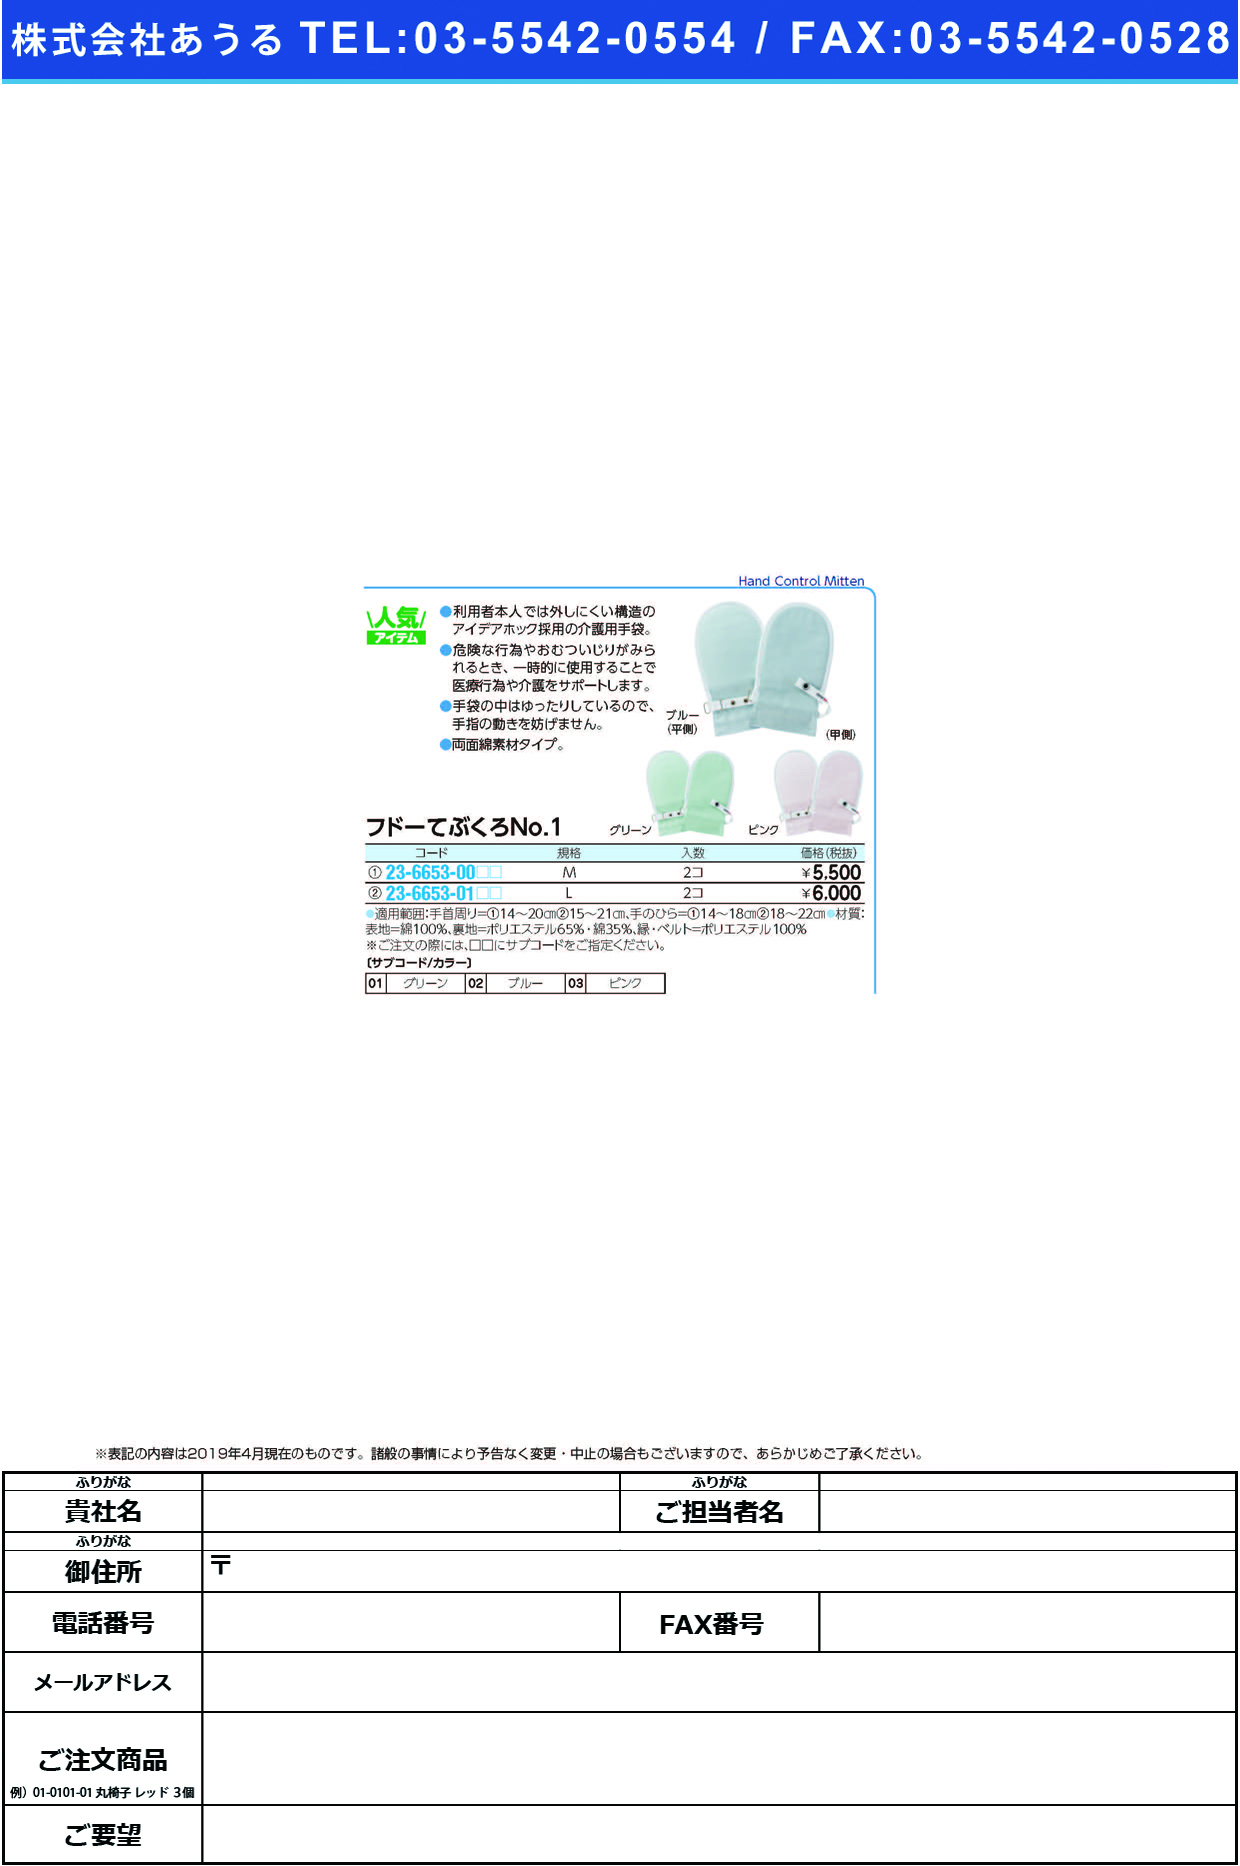 (23-6653-01)フドーてぶくろＮｏ．１ L(2ﾏｲｲﾘ) ﾌﾄﾞｰﾃﾌﾞｸﾛNO1 グリーン【1双単位】【2019年カタログ商品】